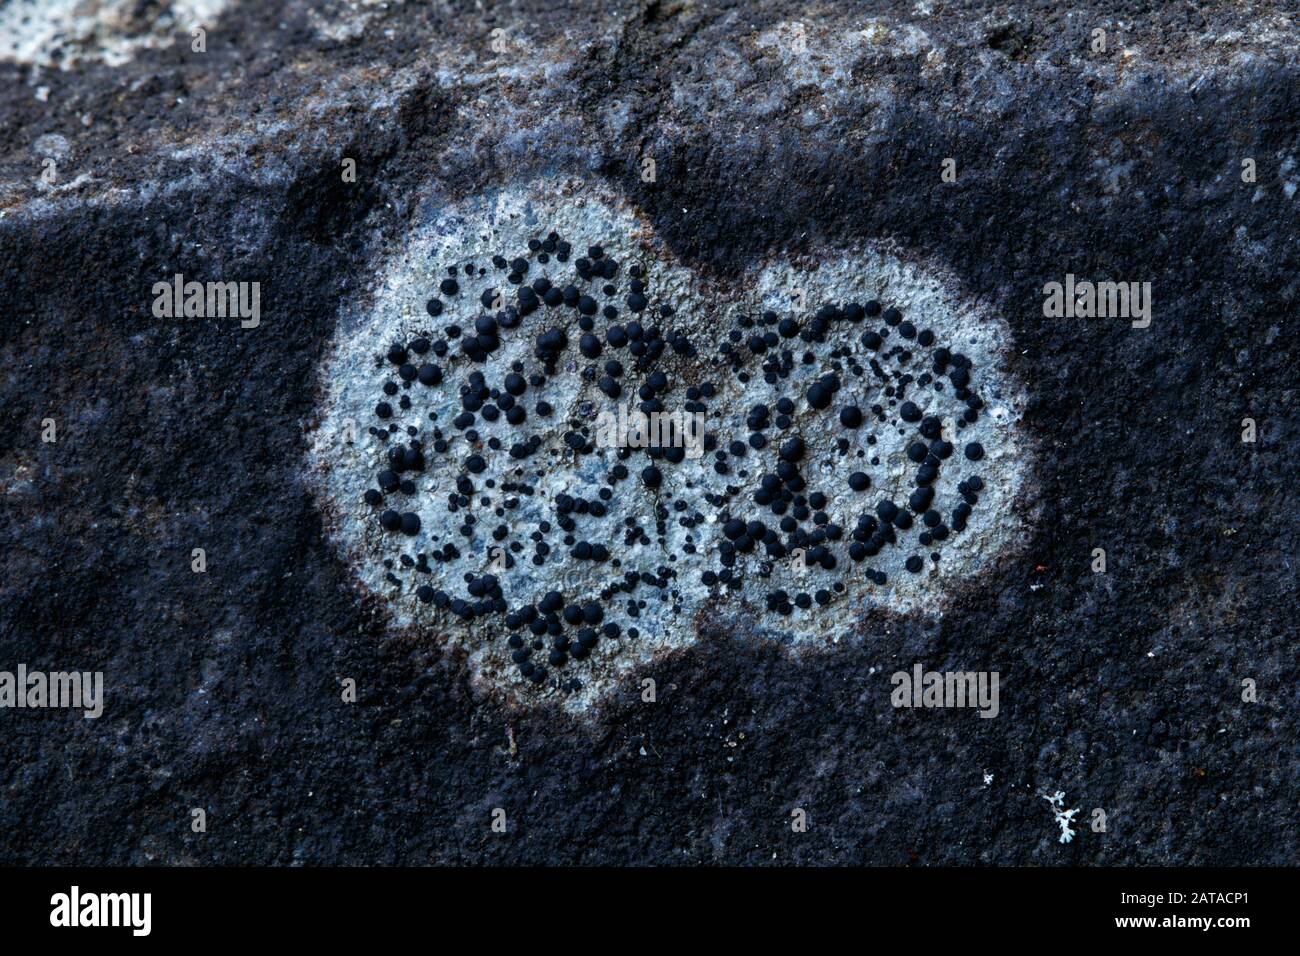 Lecidella sp. epilithic lichen / lichenized fungi in Slovakia, Central Europe Stock Photo